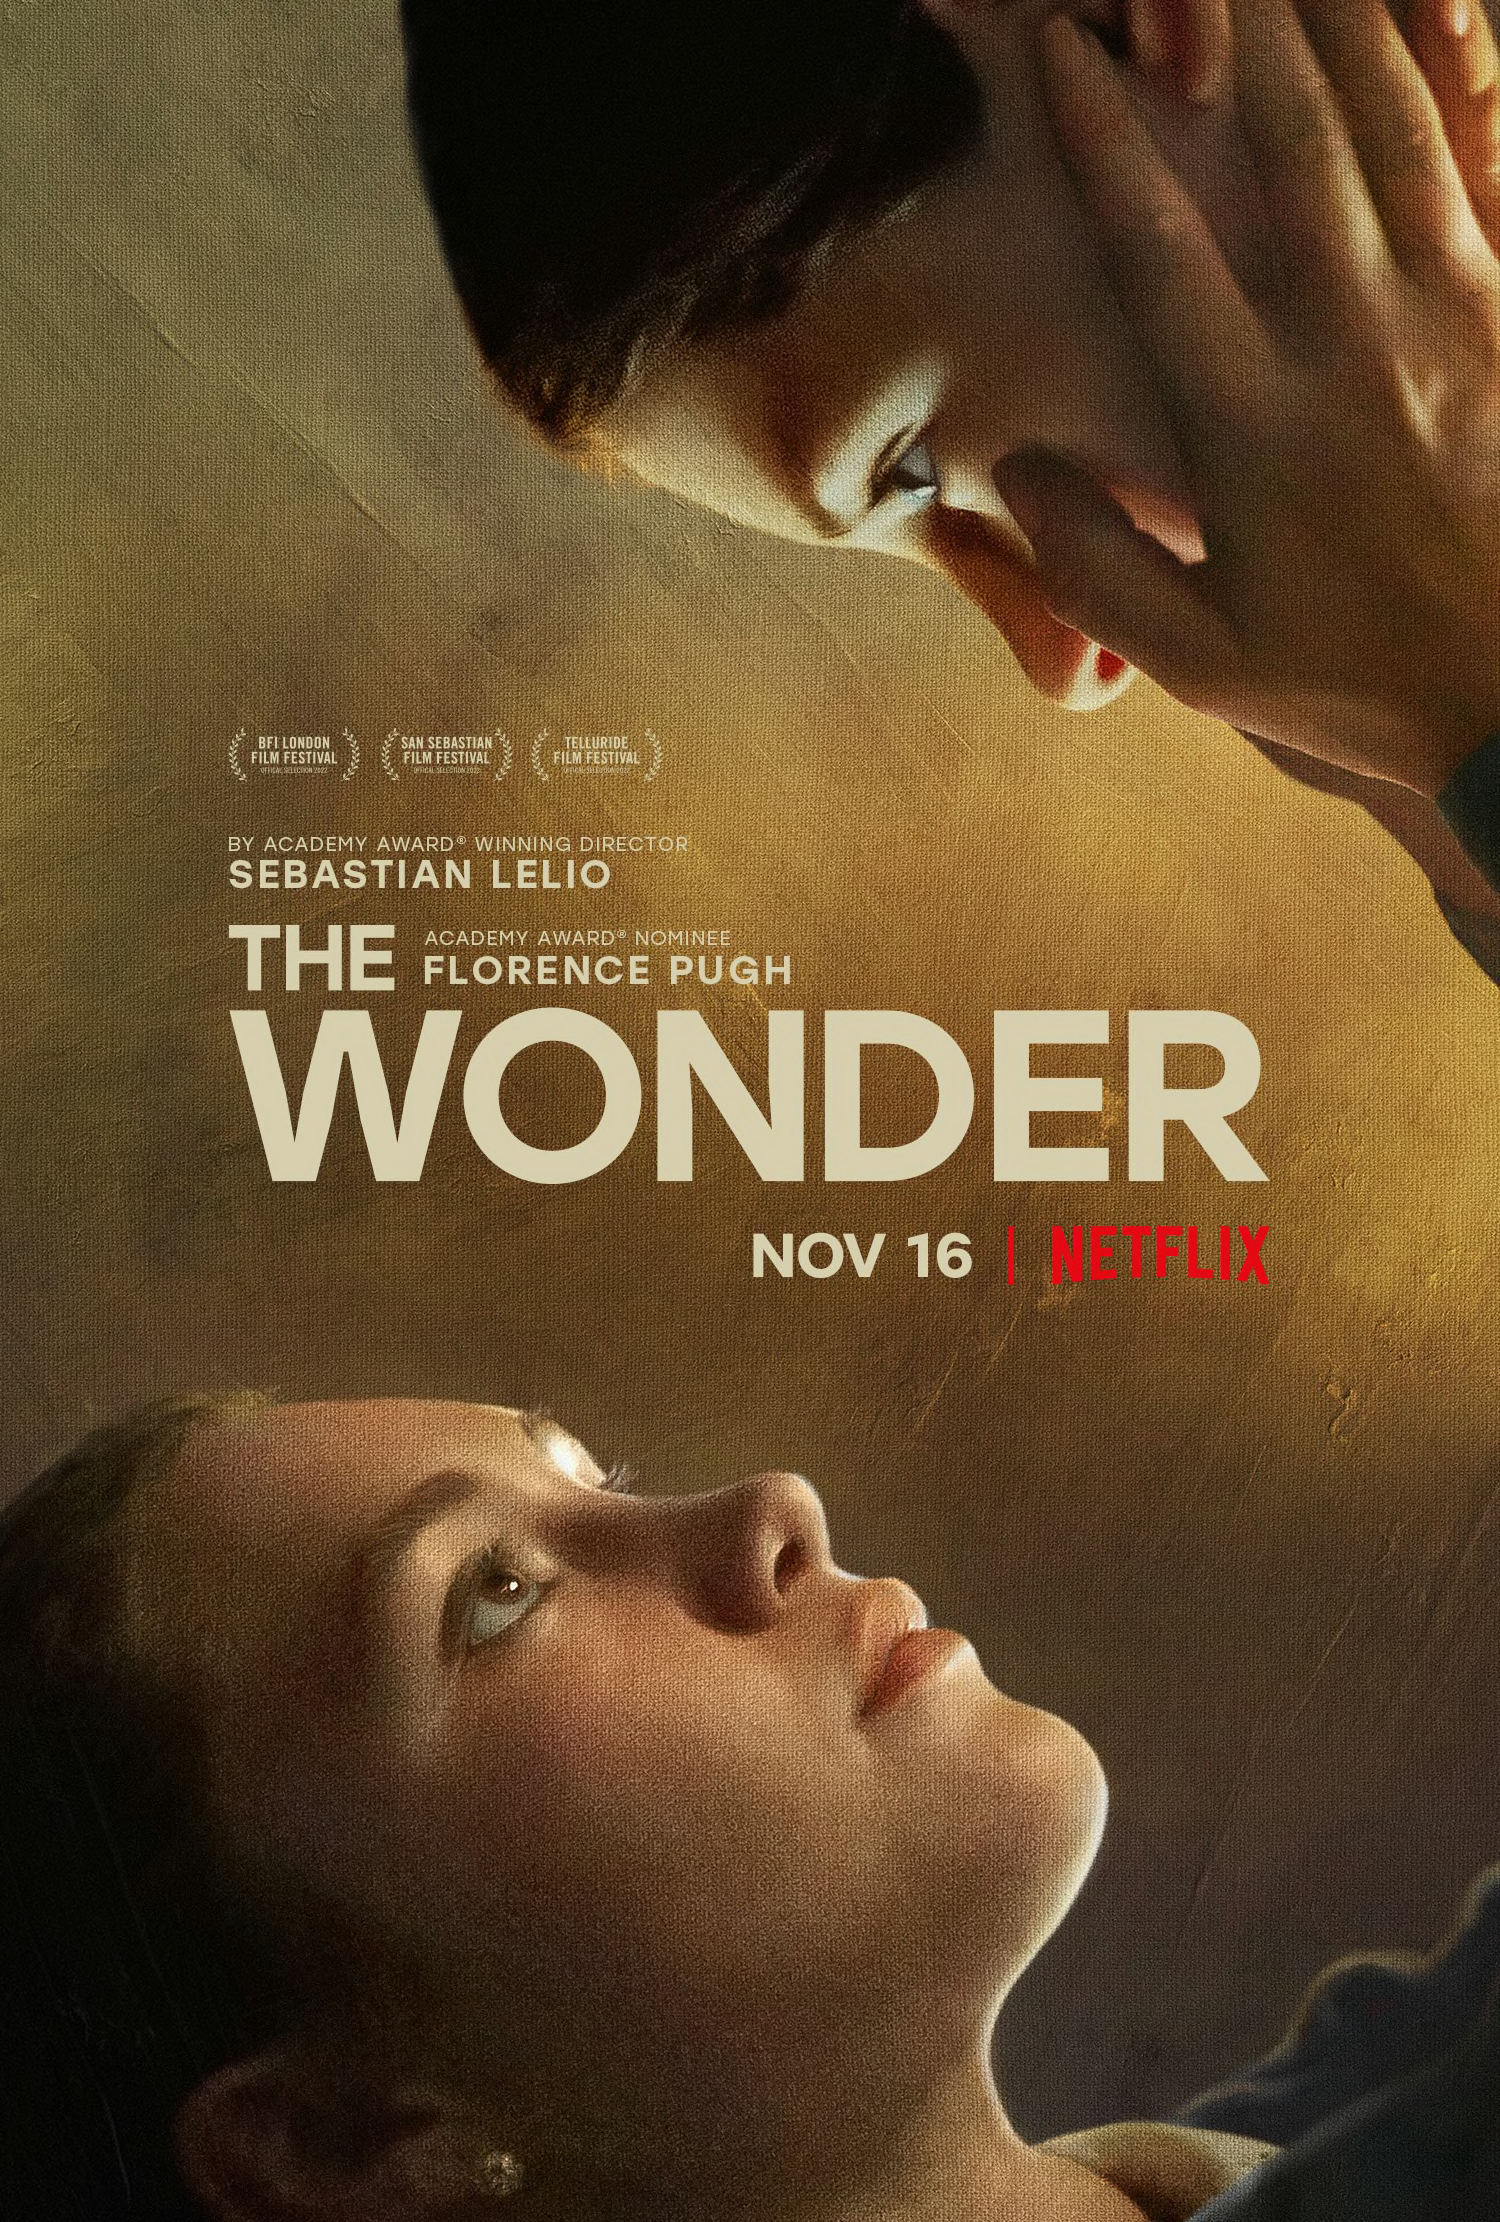 the wonder movie review reddit